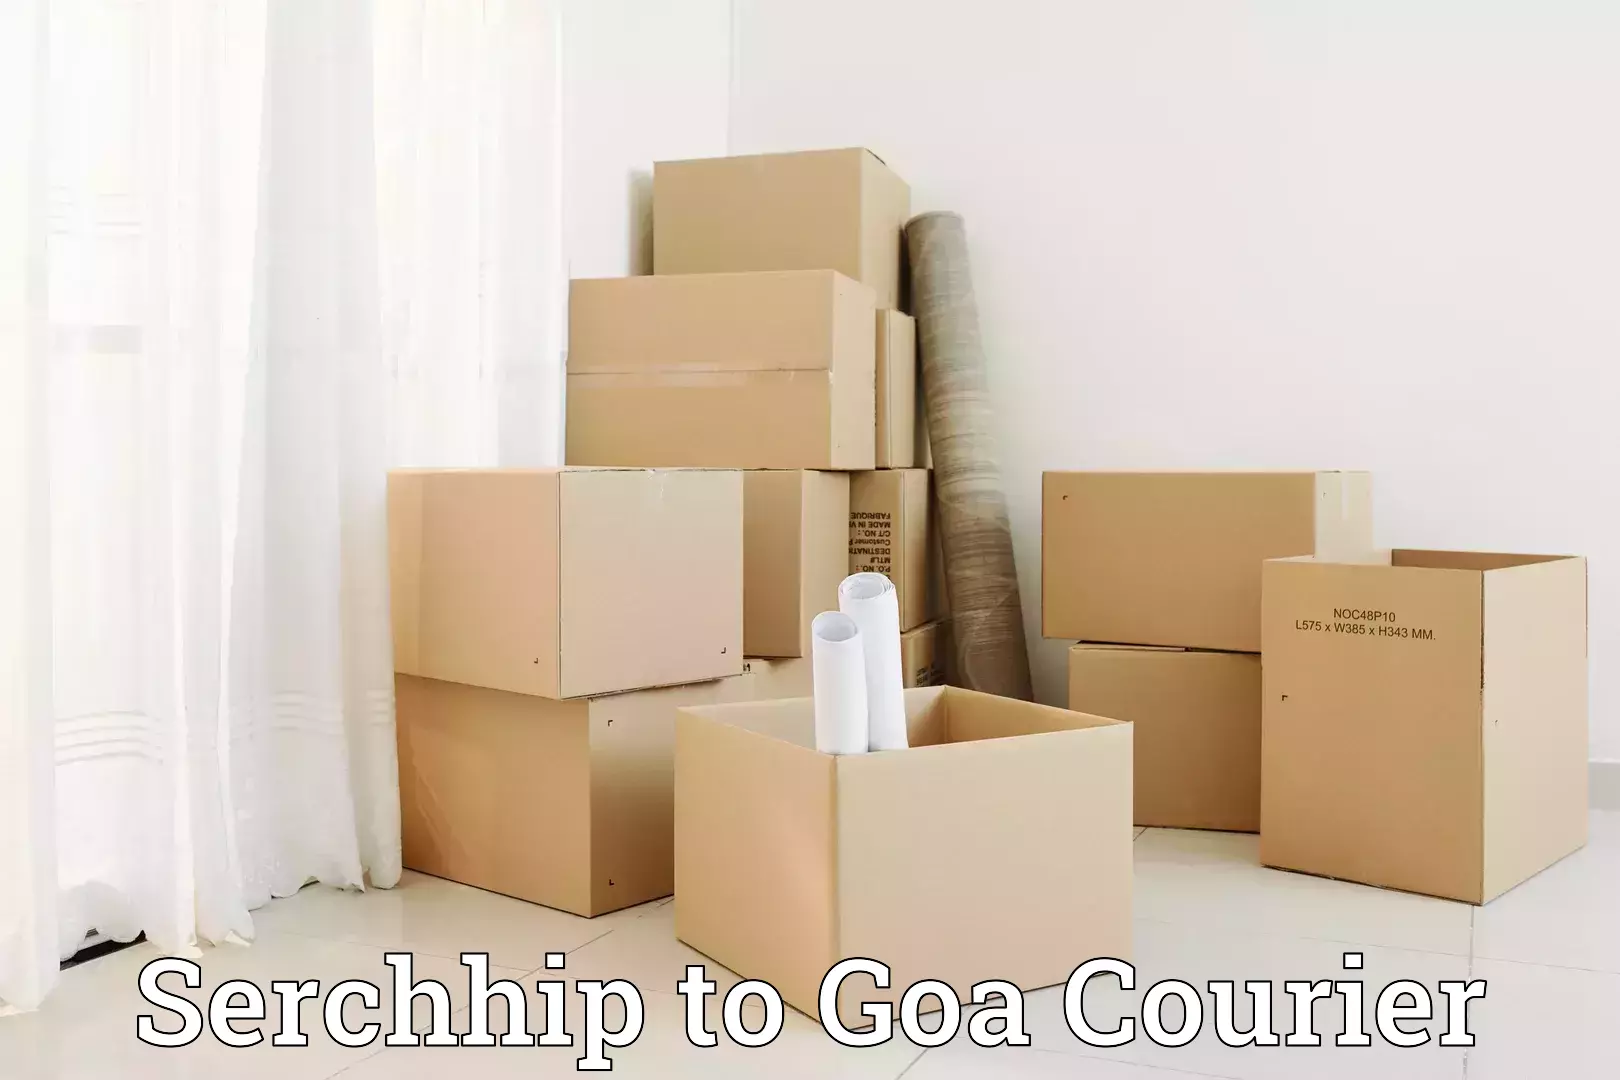 Home goods moving company Serchhip to Mormugao Port